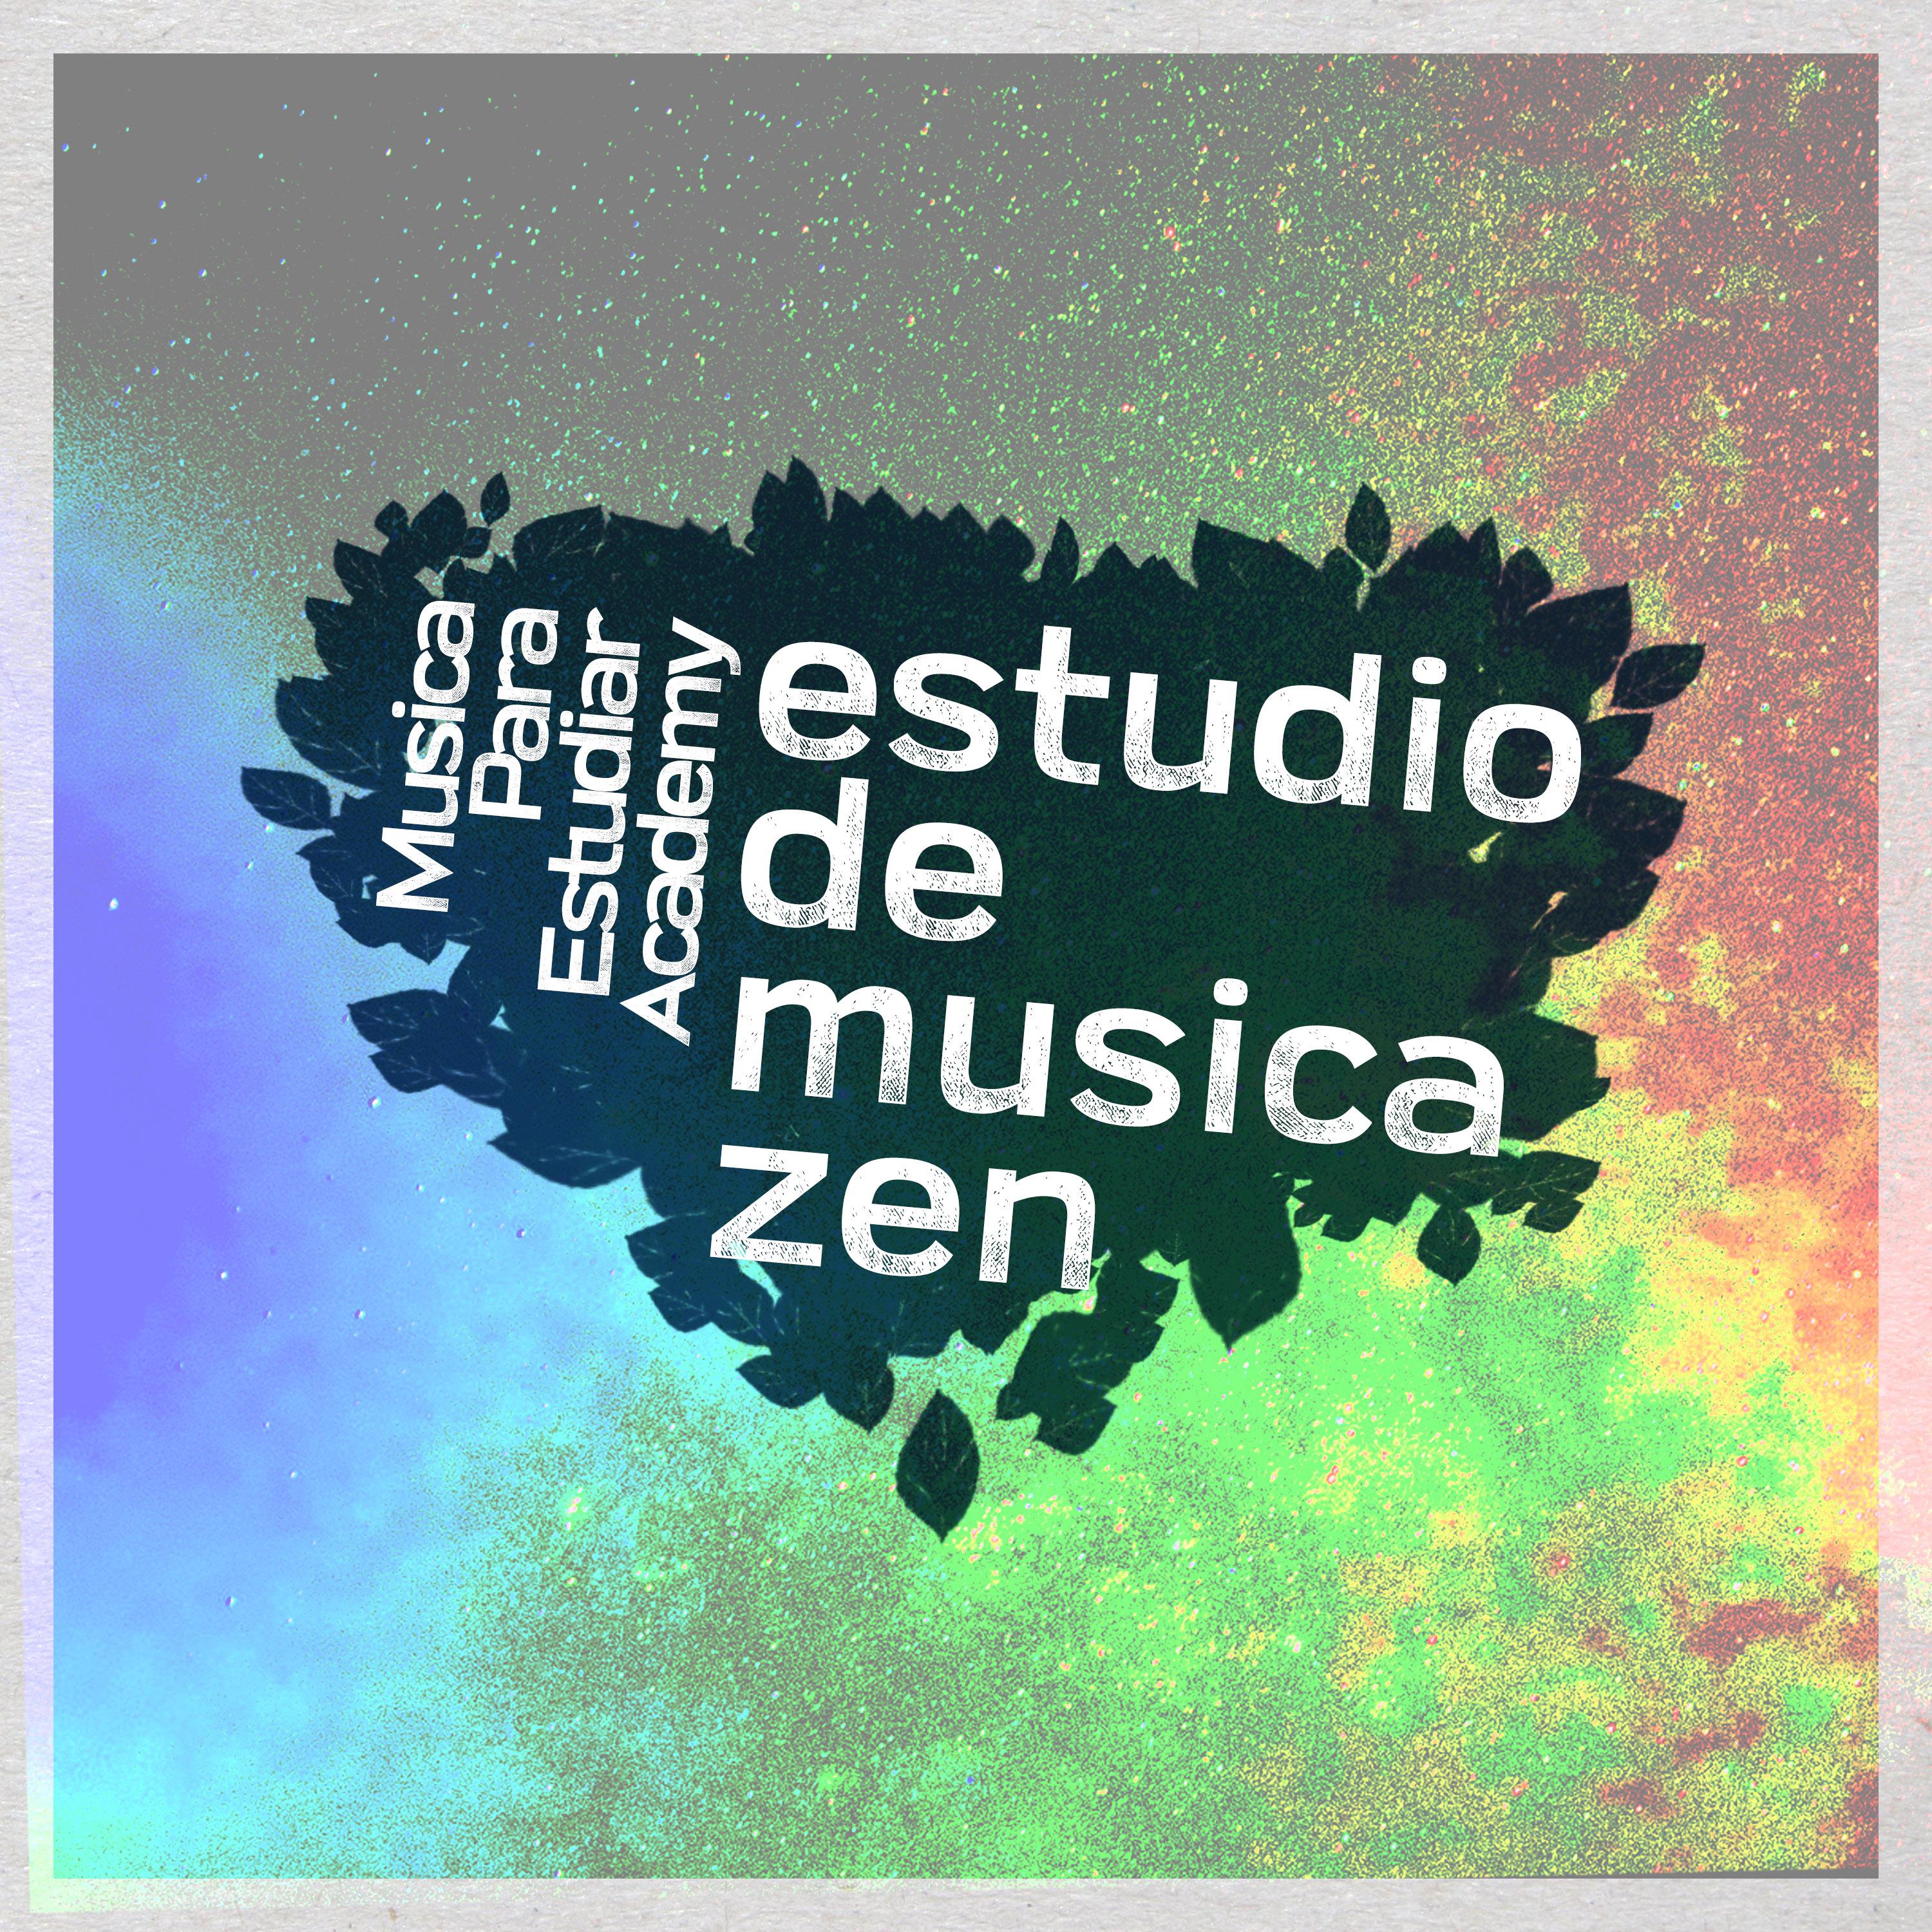 Estudio de musica zen